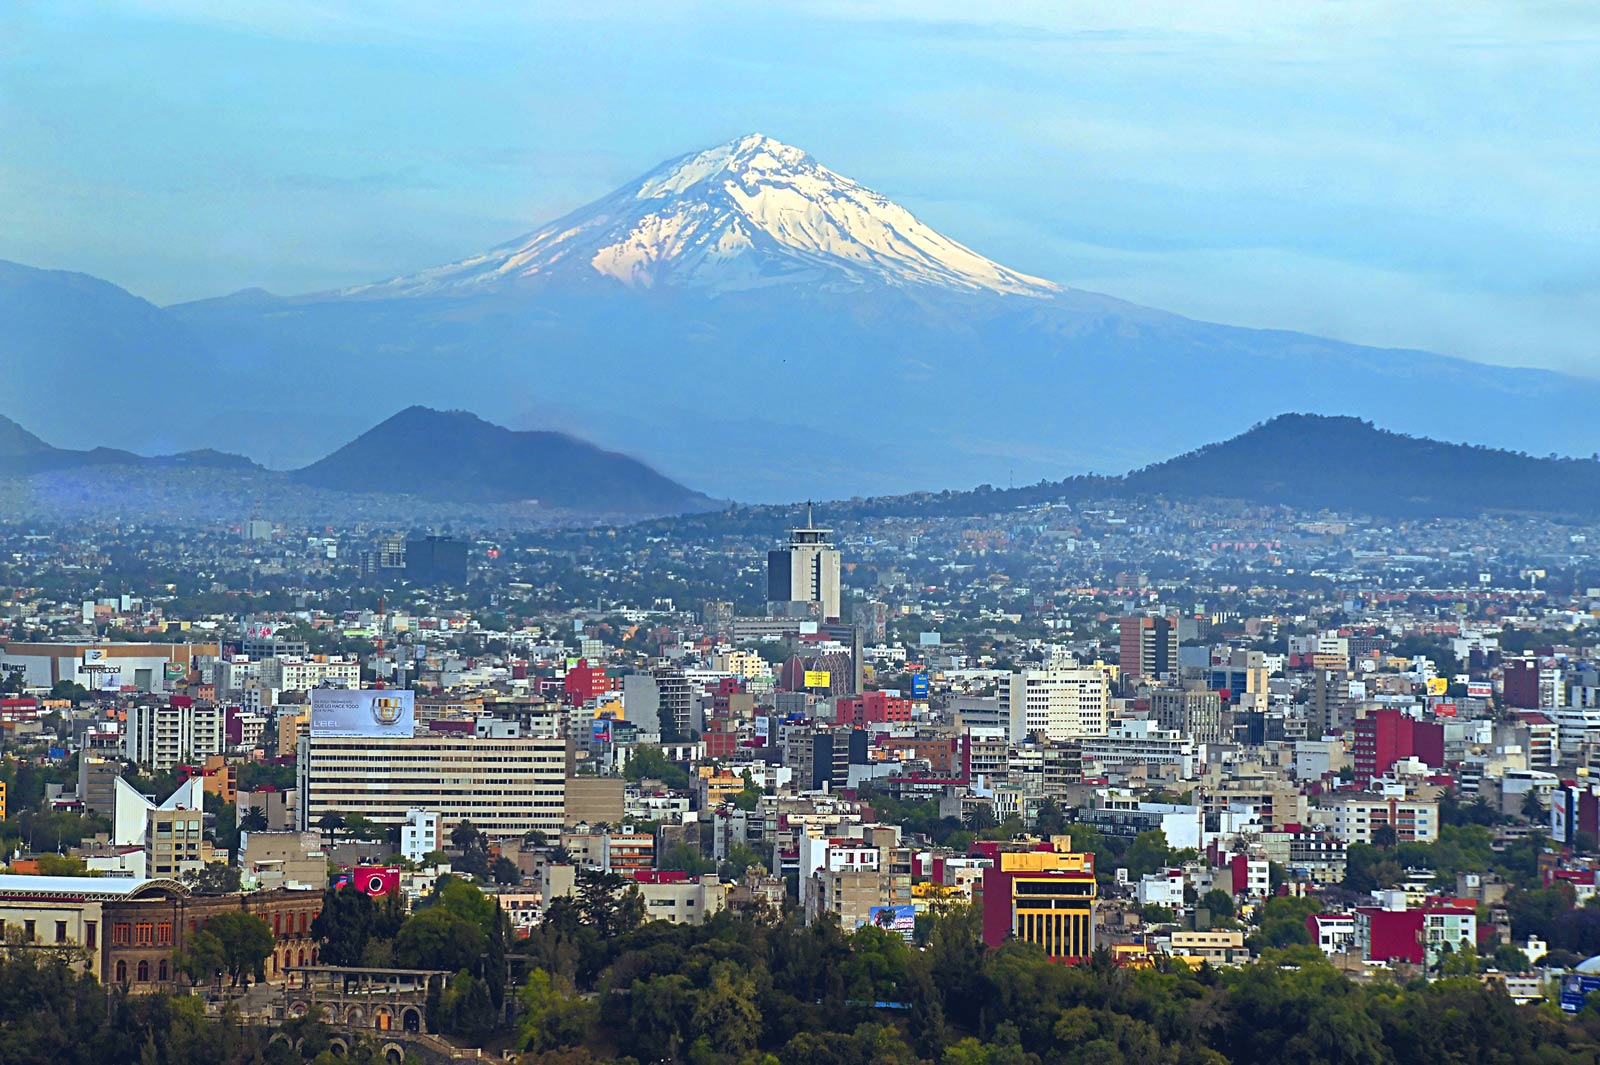 visit Mexico city